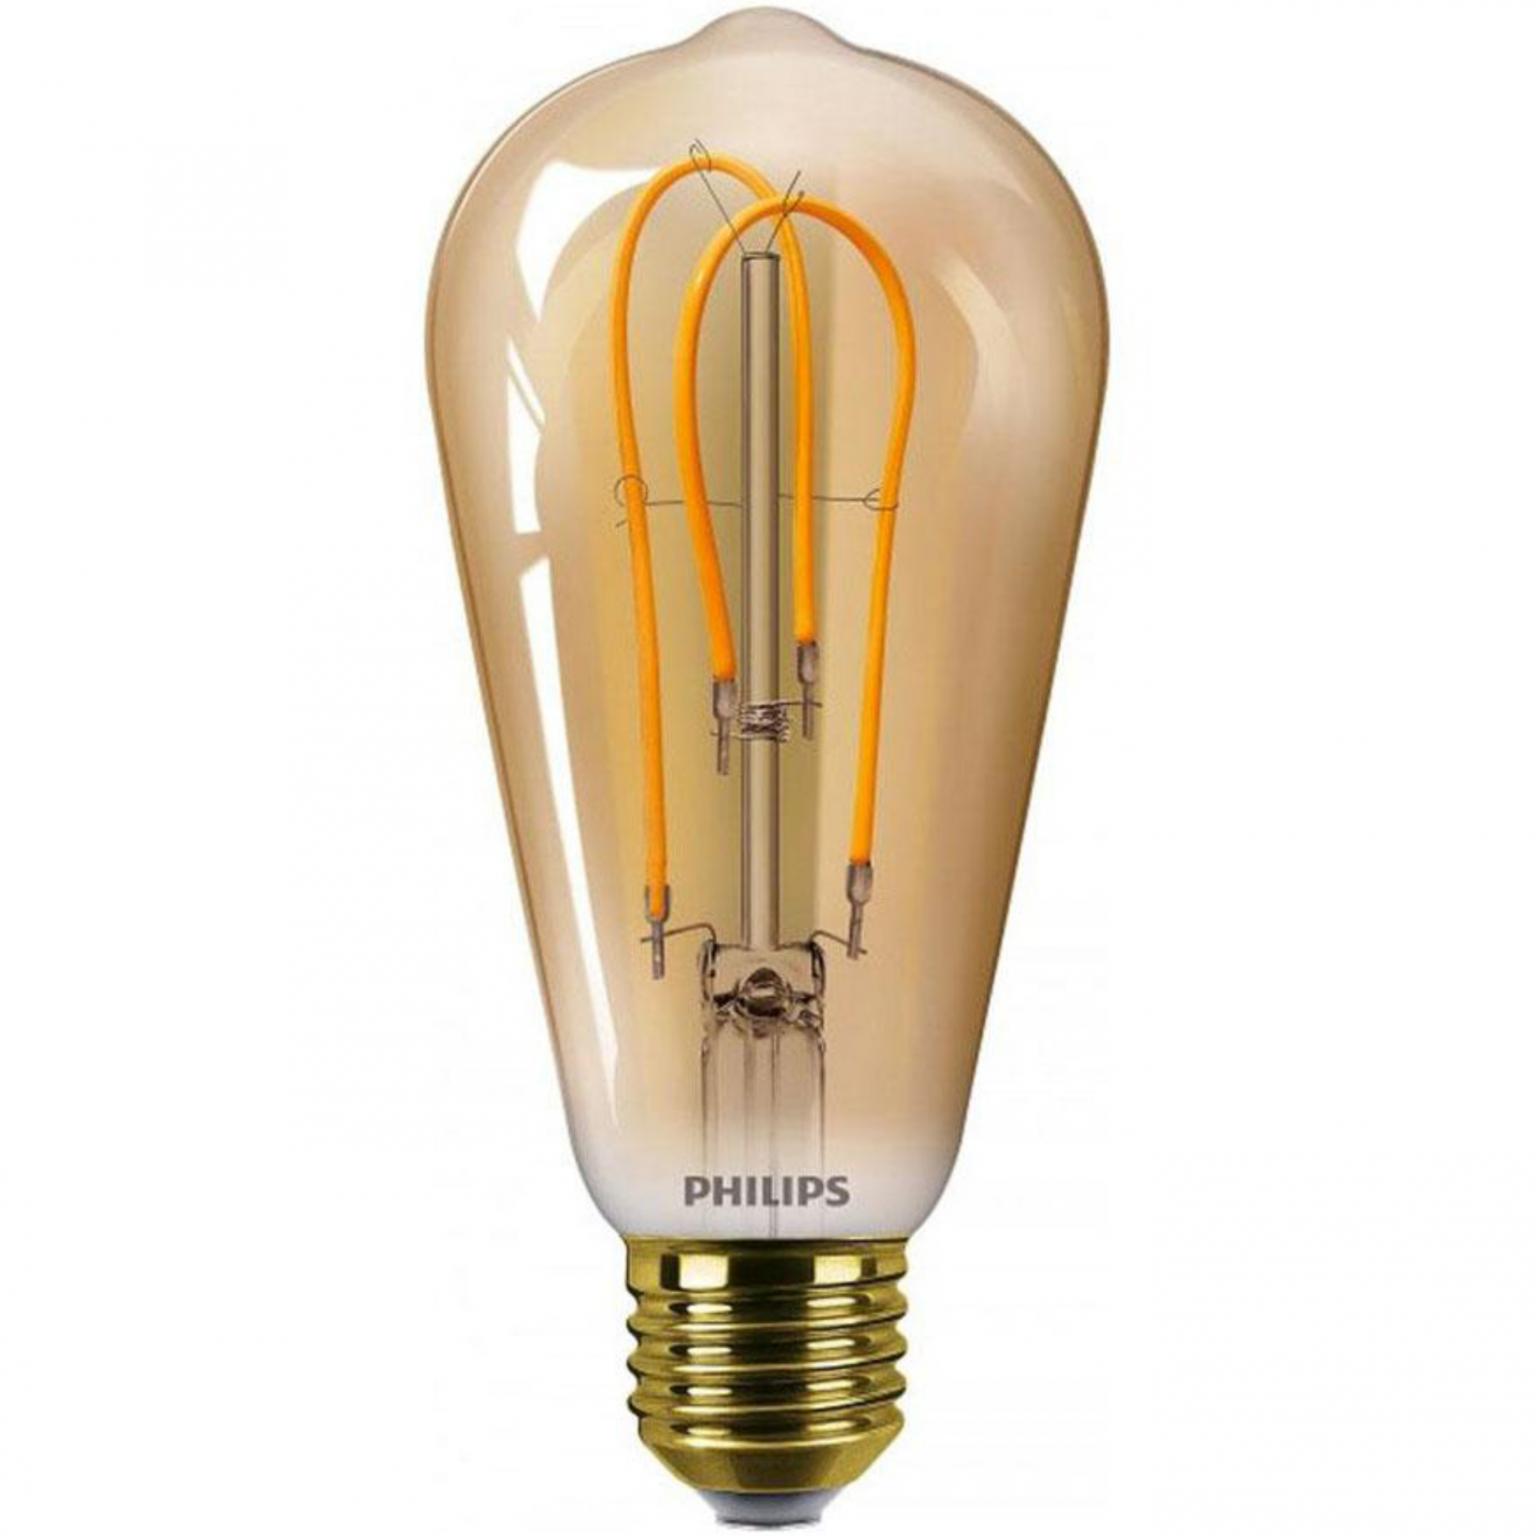 Filamentlamp - Witte verlichting - Philips